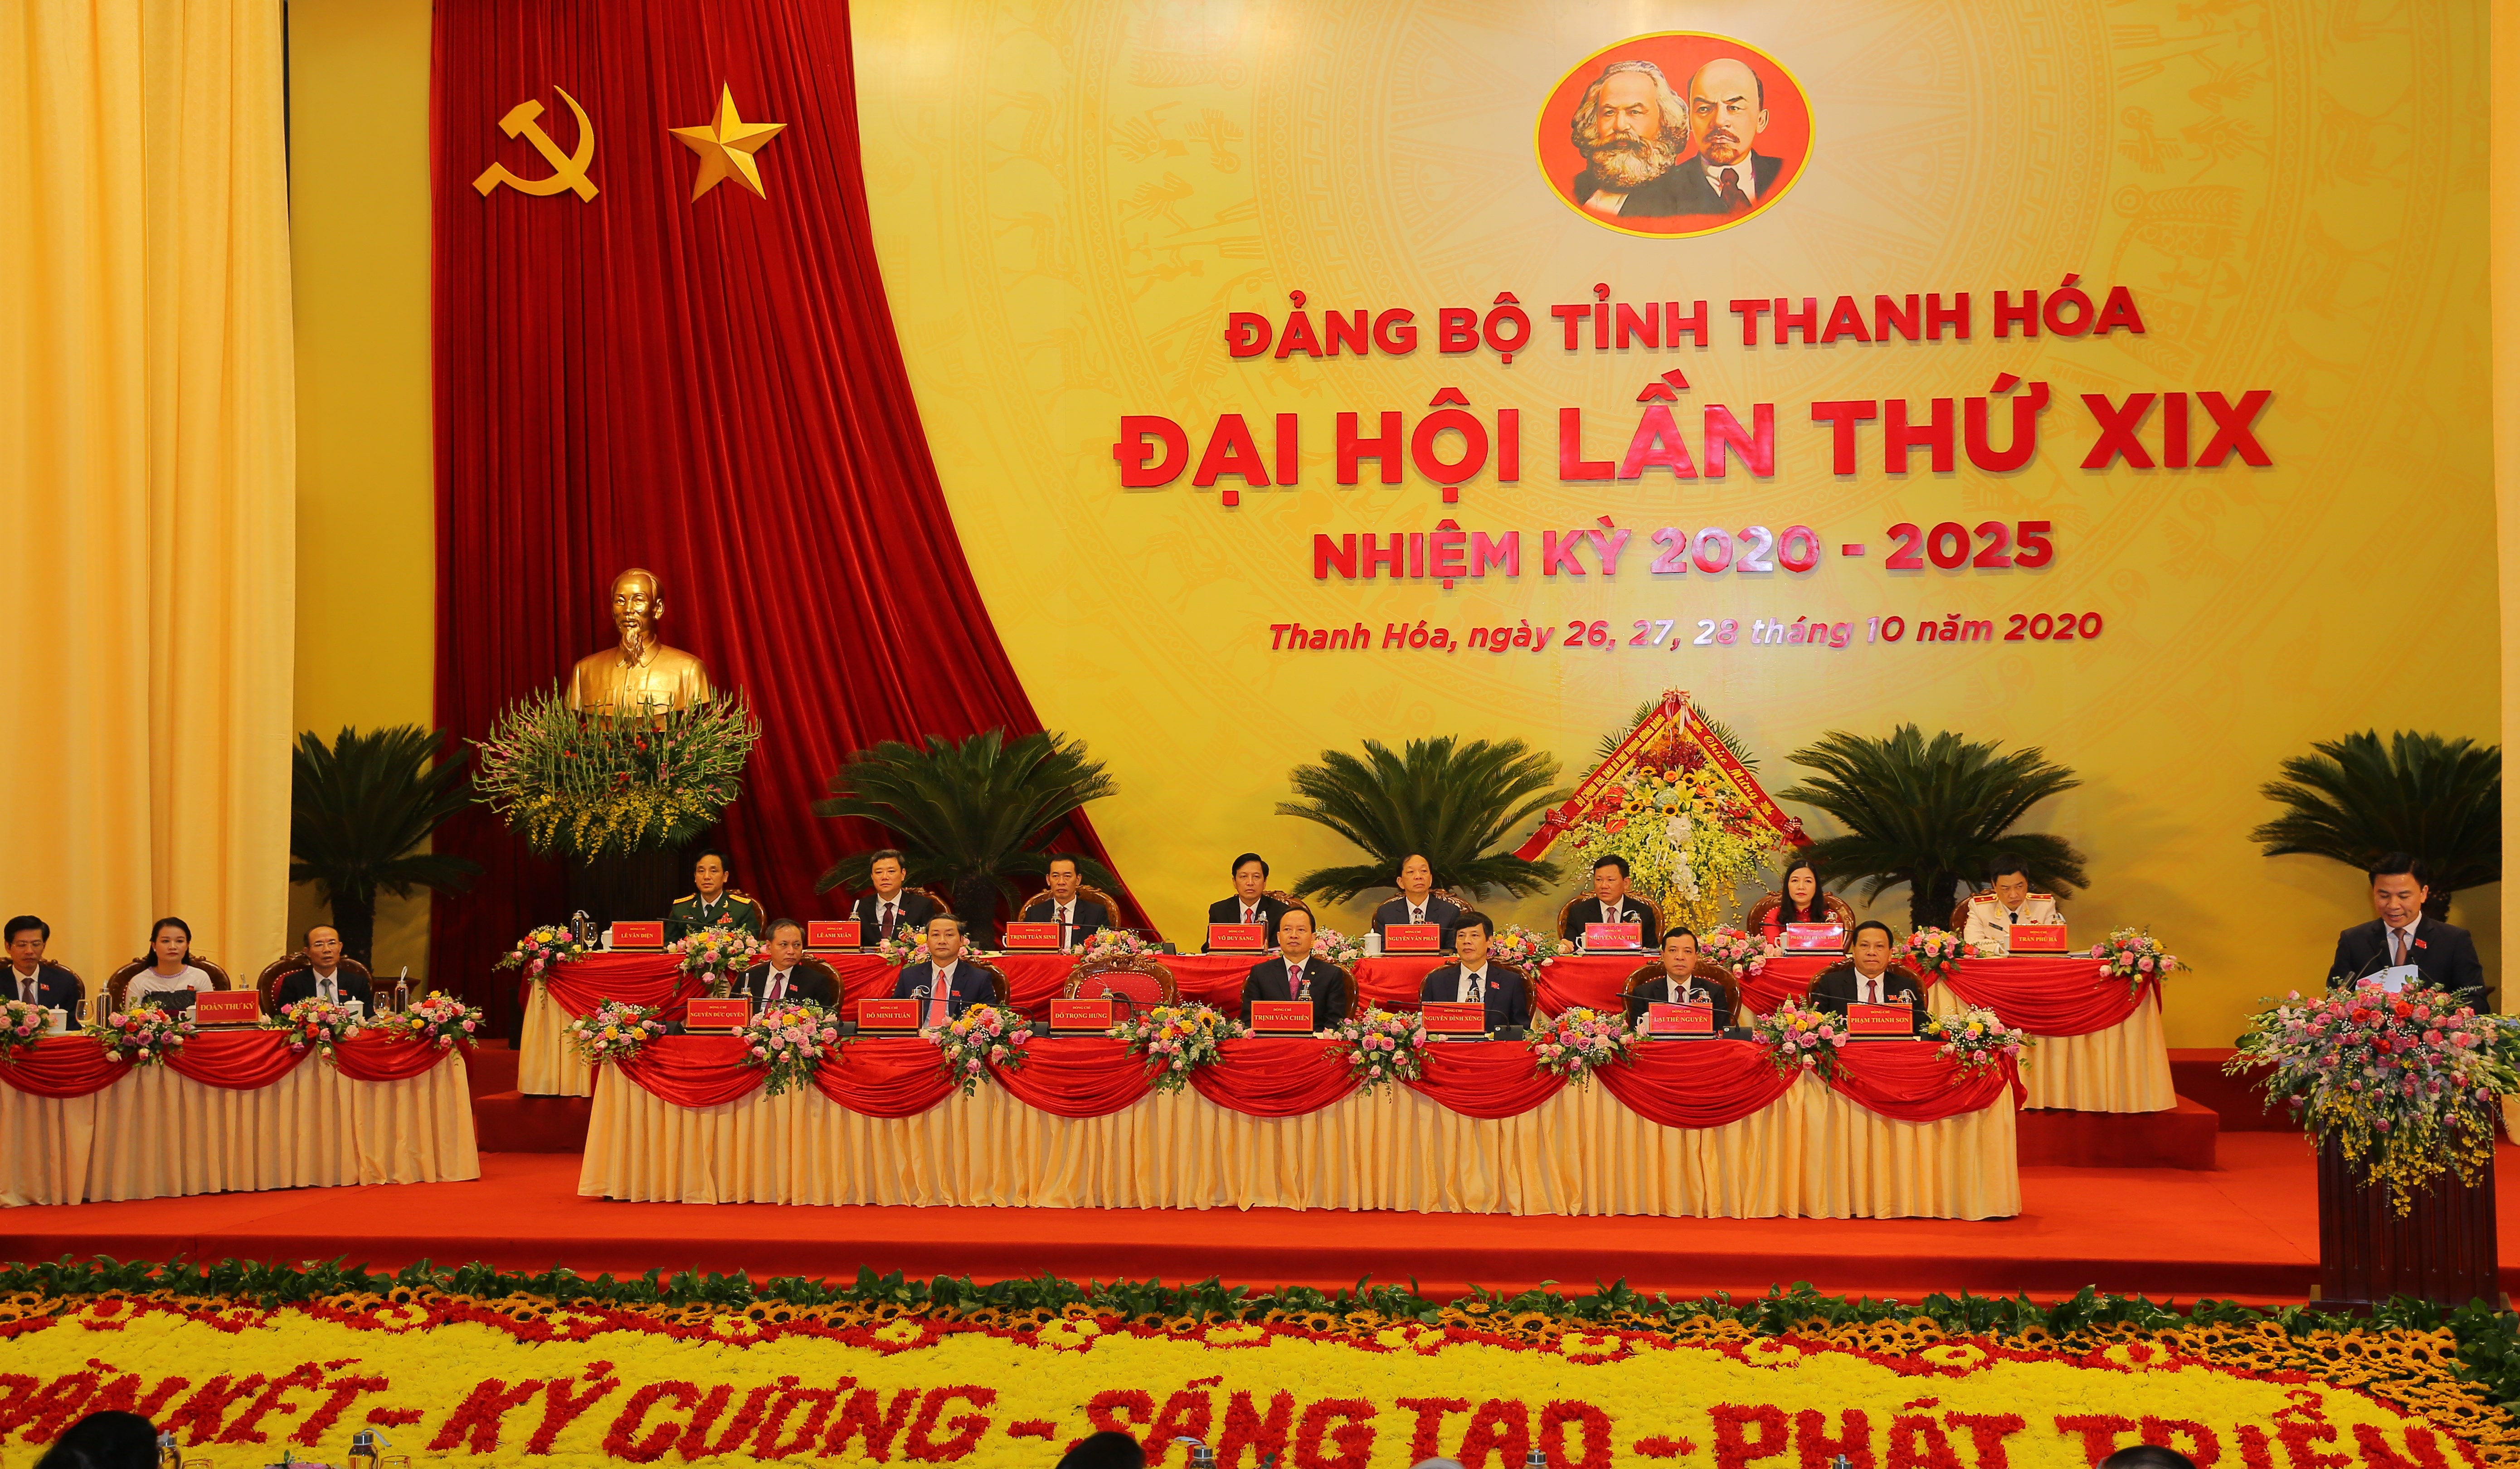 Đại hội Đại biểu Đảng bộ tỉnh Thanh Hóa lần thứ XIX, nhiệm kỳ 2020-2025